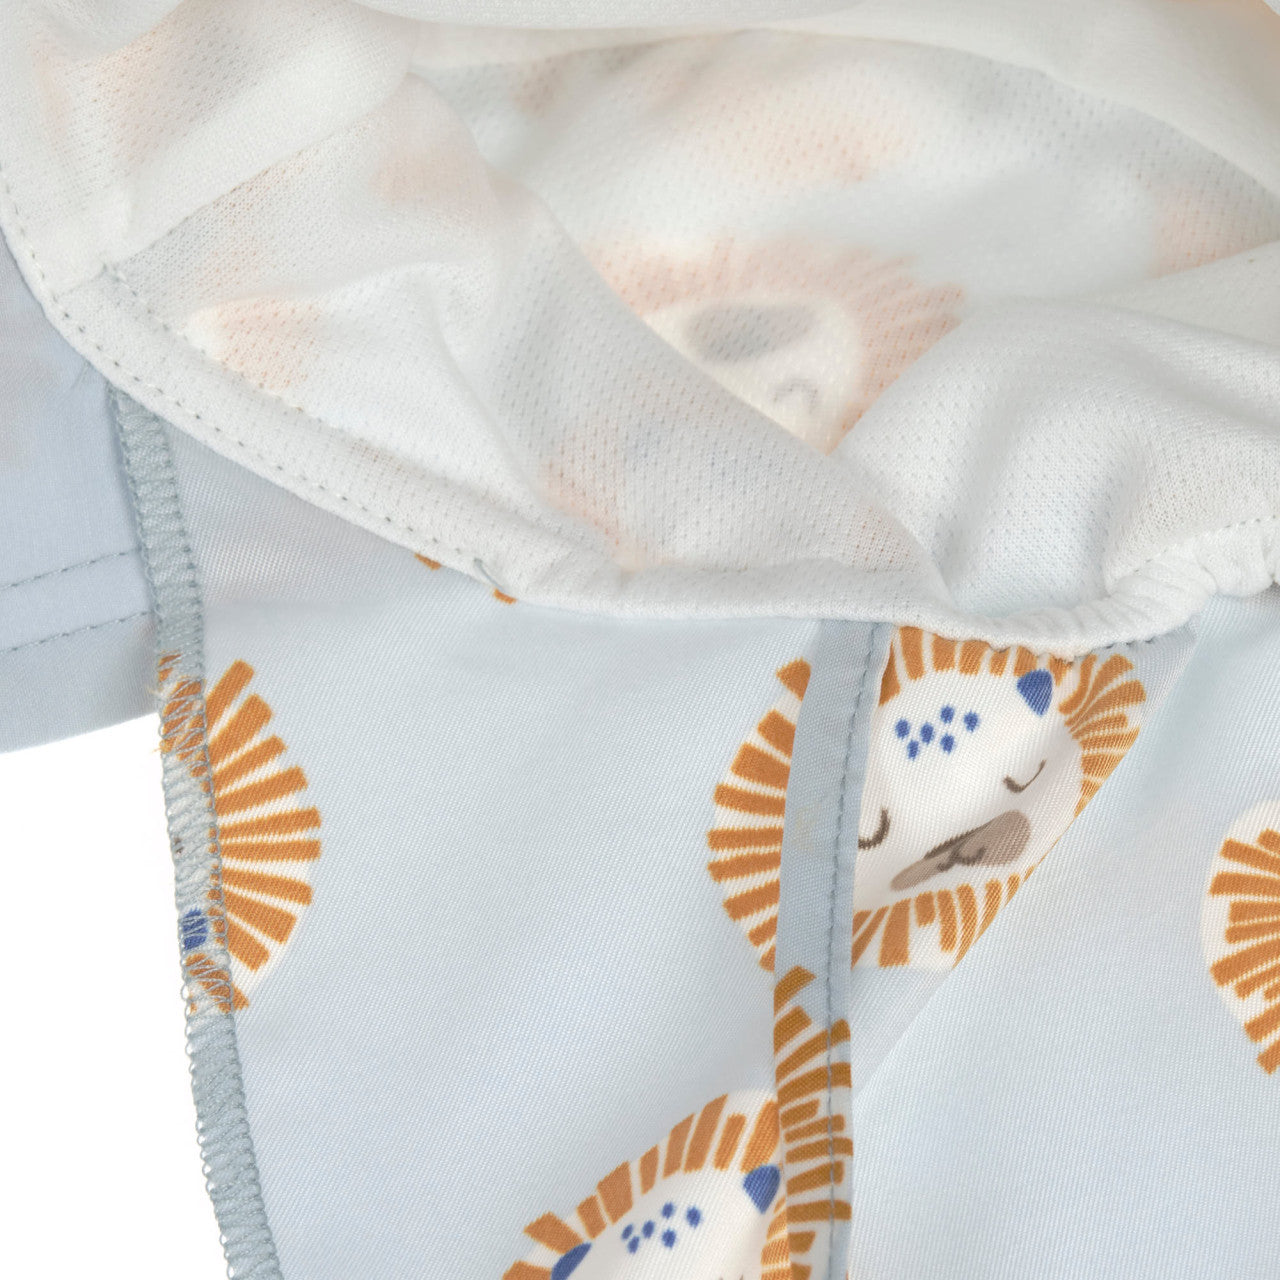 Sonnenhut Baby (UV Schutz & Nackenschutz) - Löwe, Hellblau